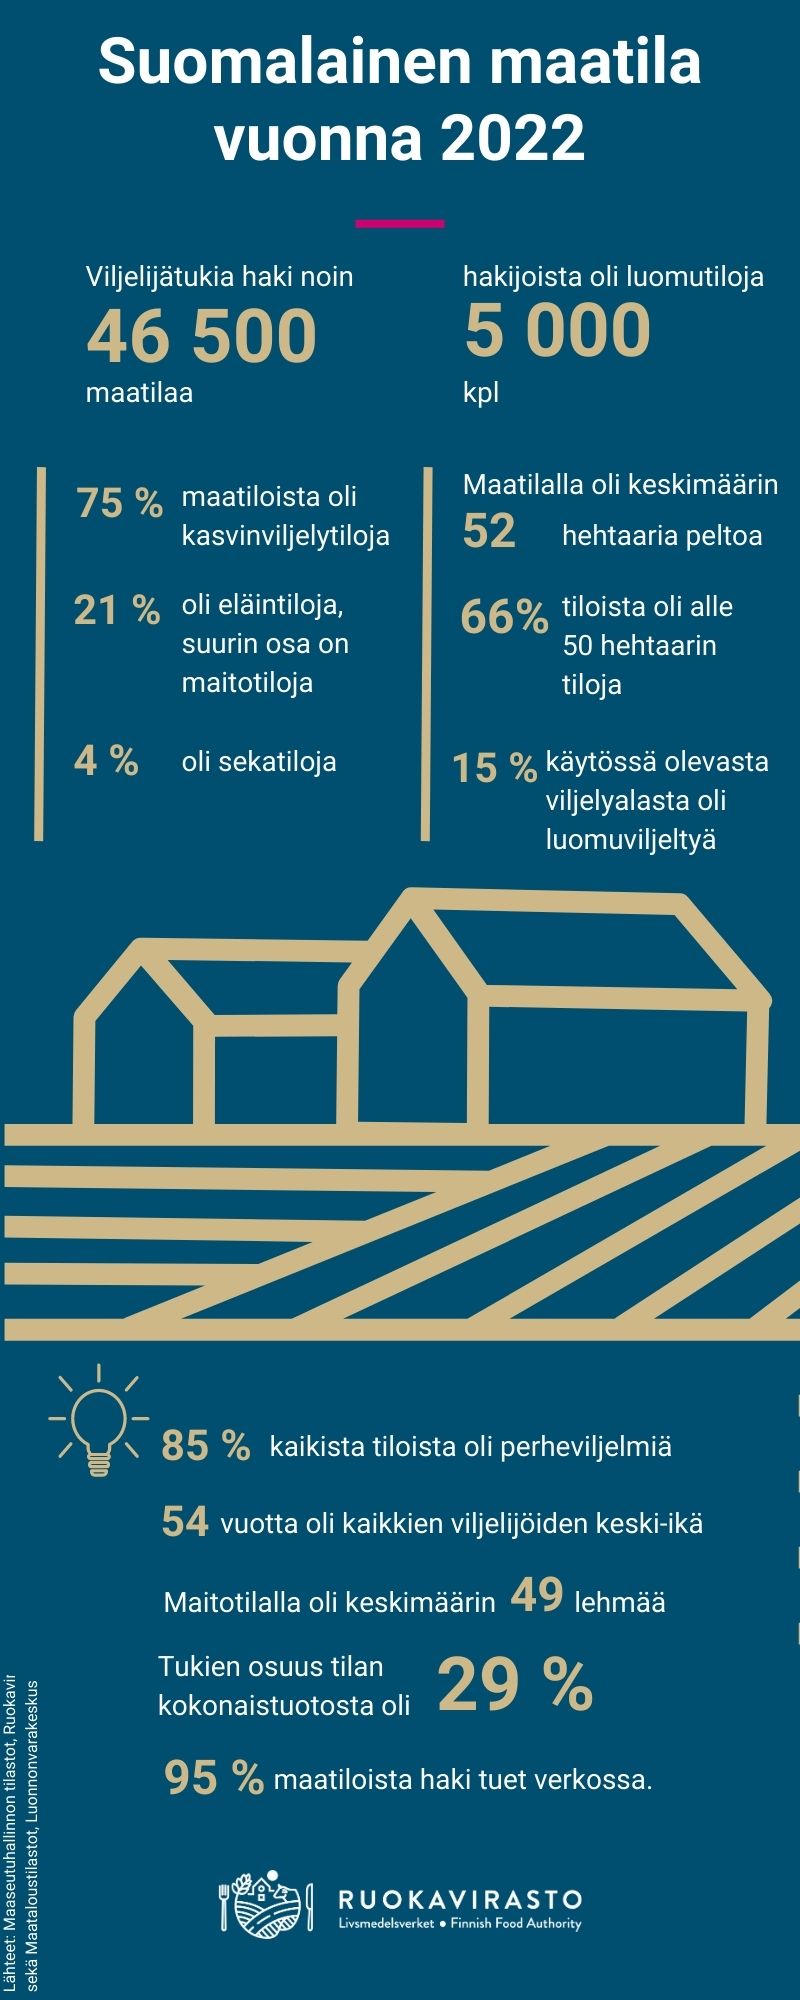 Suomalainen maatila vuonna 2022. Infografiikan tiedot on kerrottu tekstissä.